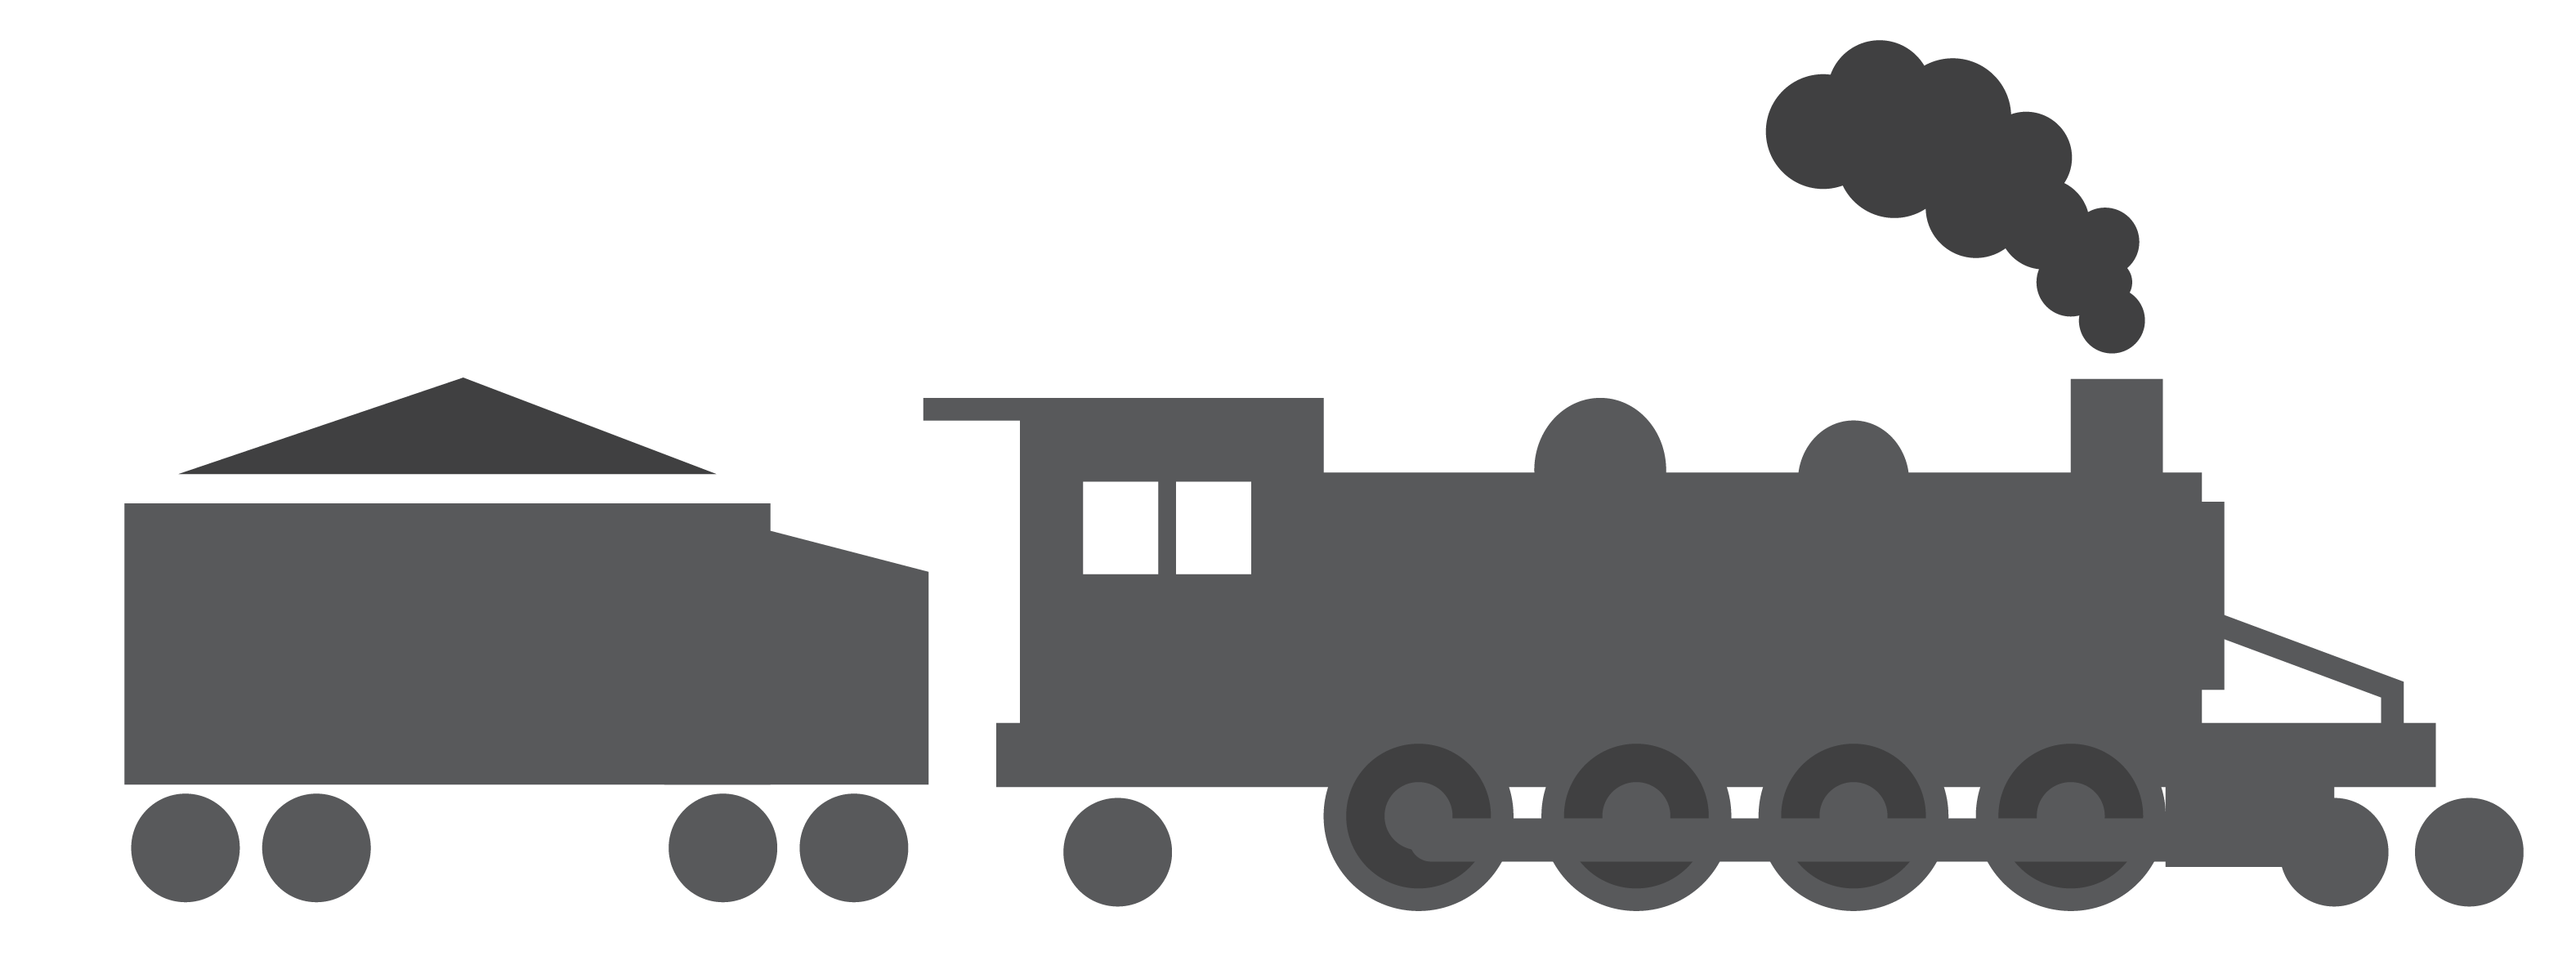 Steam engine train.